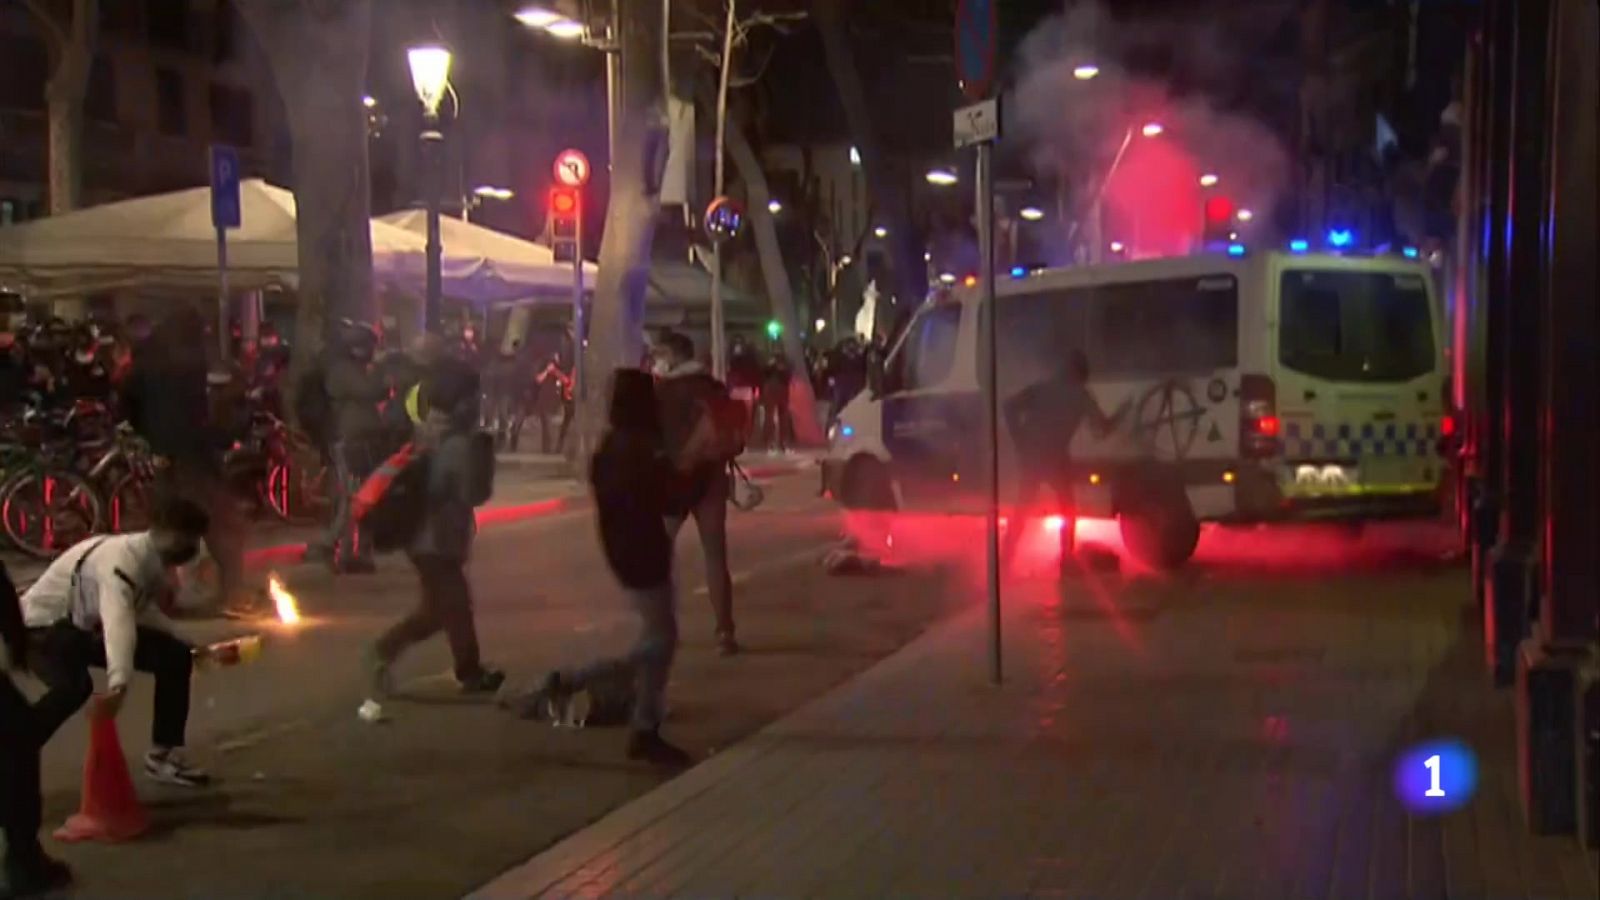 Nova nit d'actes violents a Barcelona 